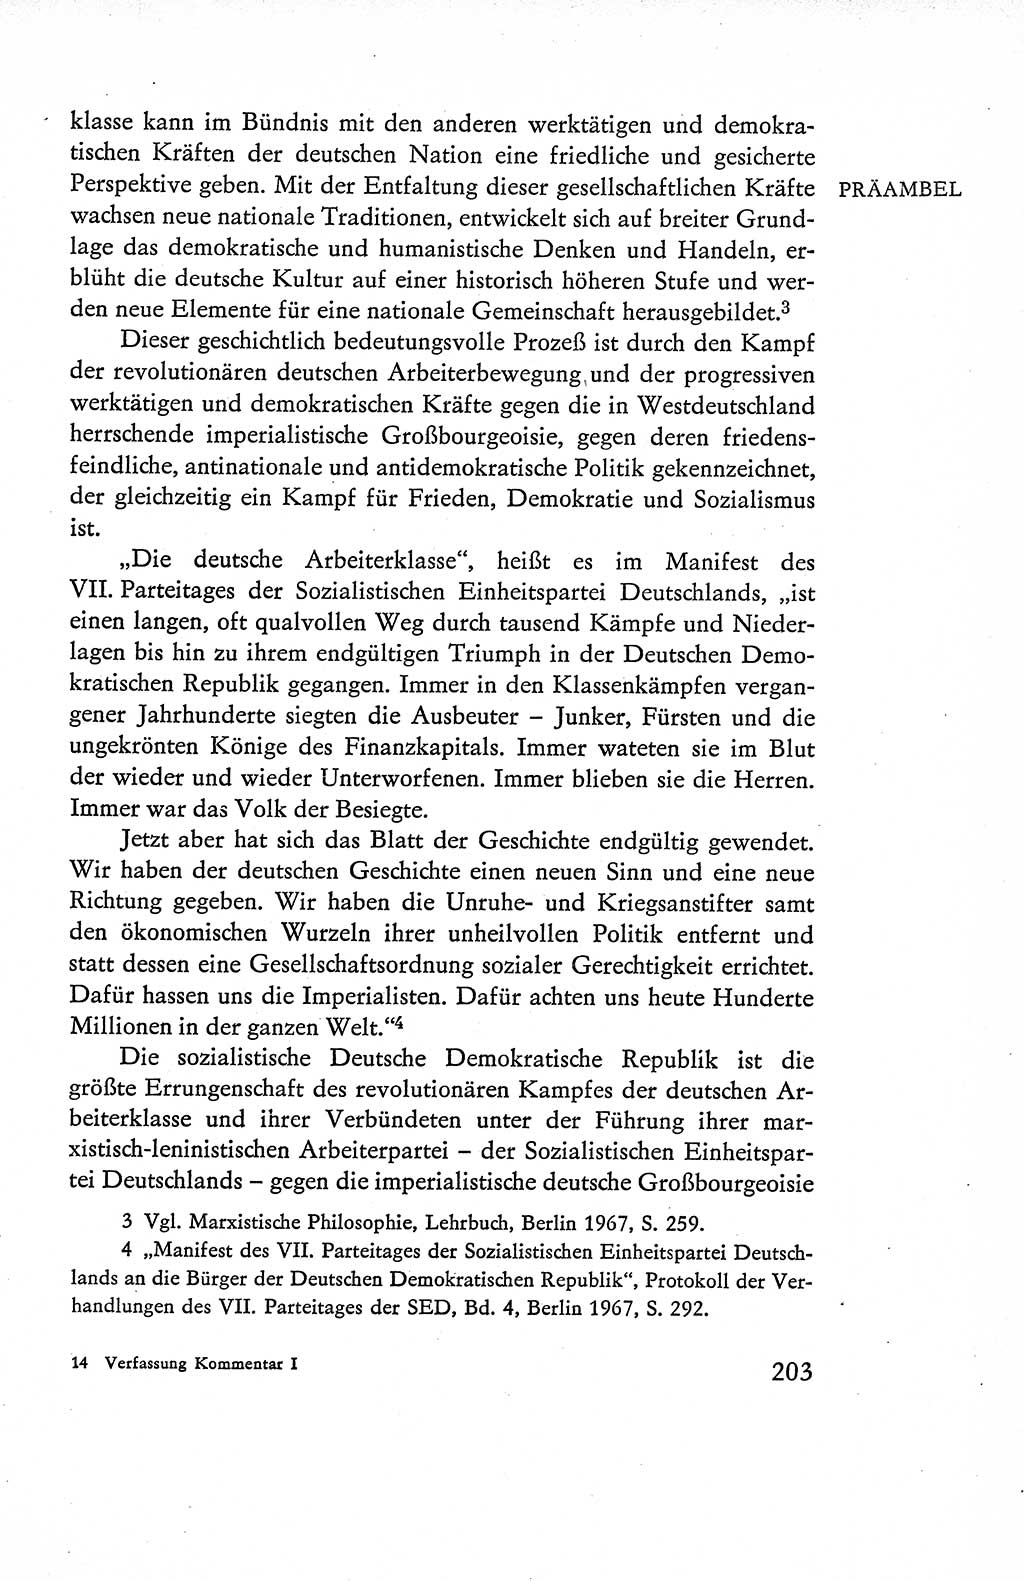 Verfassung der Deutschen Demokratischen Republik (DDR), Dokumente, Kommentar 1969, Band 1, Seite 203 (Verf. DDR Dok. Komm. 1969, Bd. 1, S. 203)